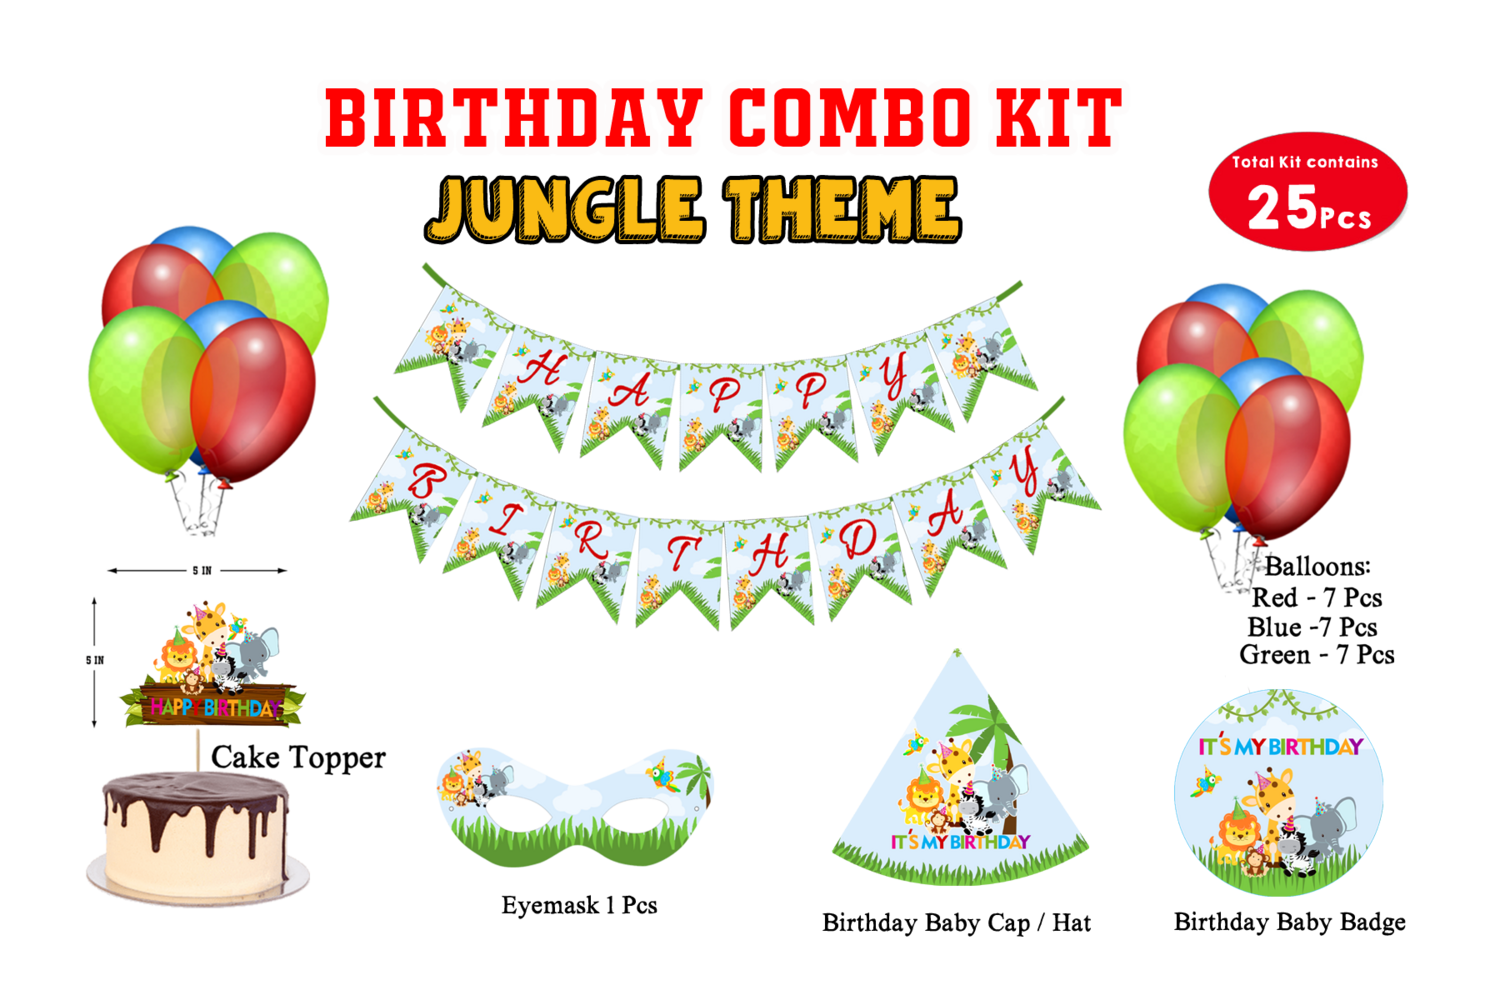 Jungle Theme - Combo Kit 25Pcs (Non Personalized)